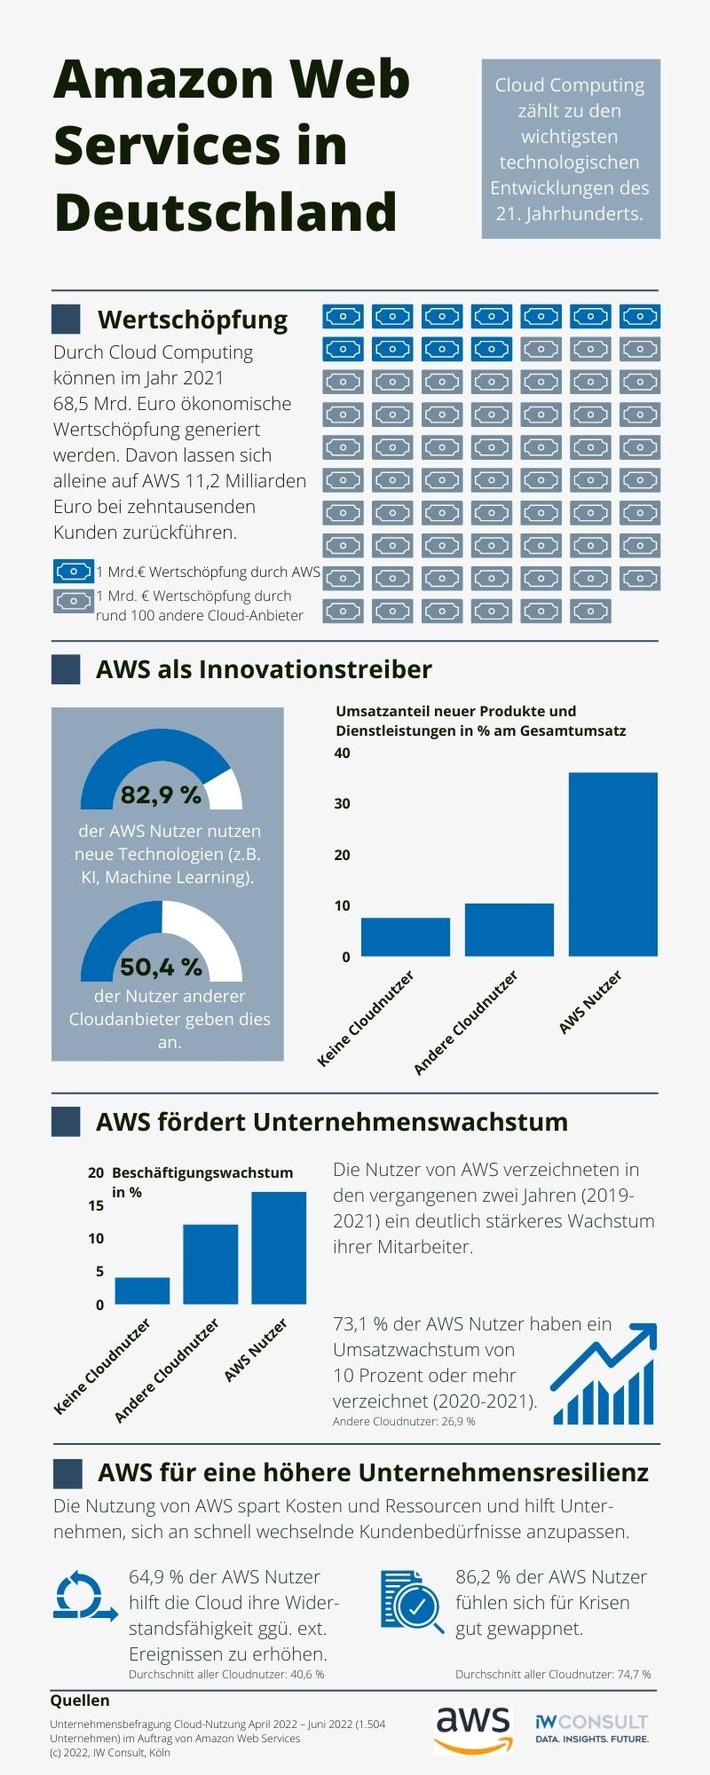 AWS unterstützt die deutsche Wirtschaft bei Innovation und Wachstum